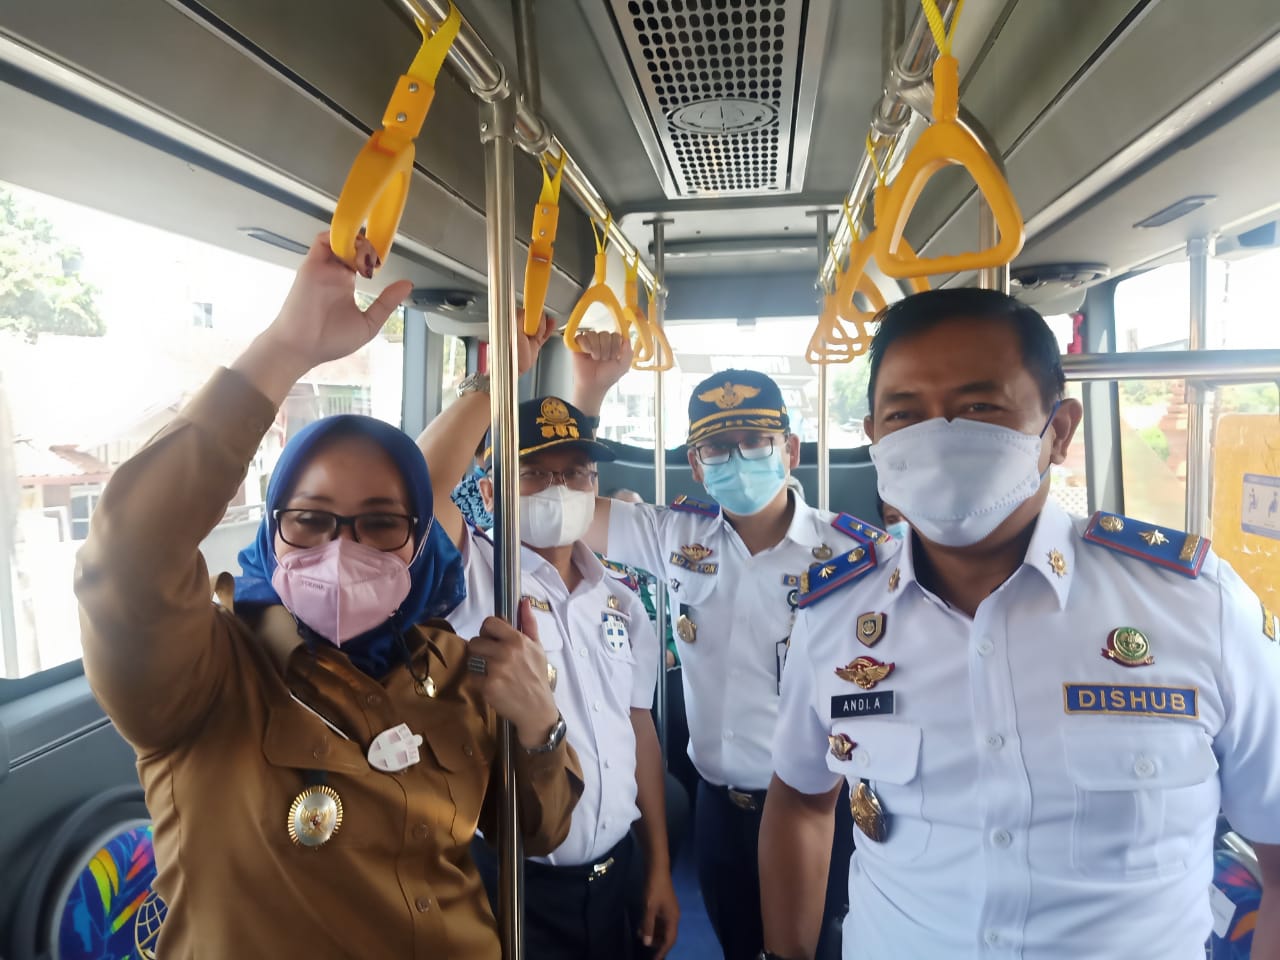 Tarif Bus Trans Cirebon Cuma Rp 5 Ribu, Bayar Pakai QRIS, Baru Uji Coba